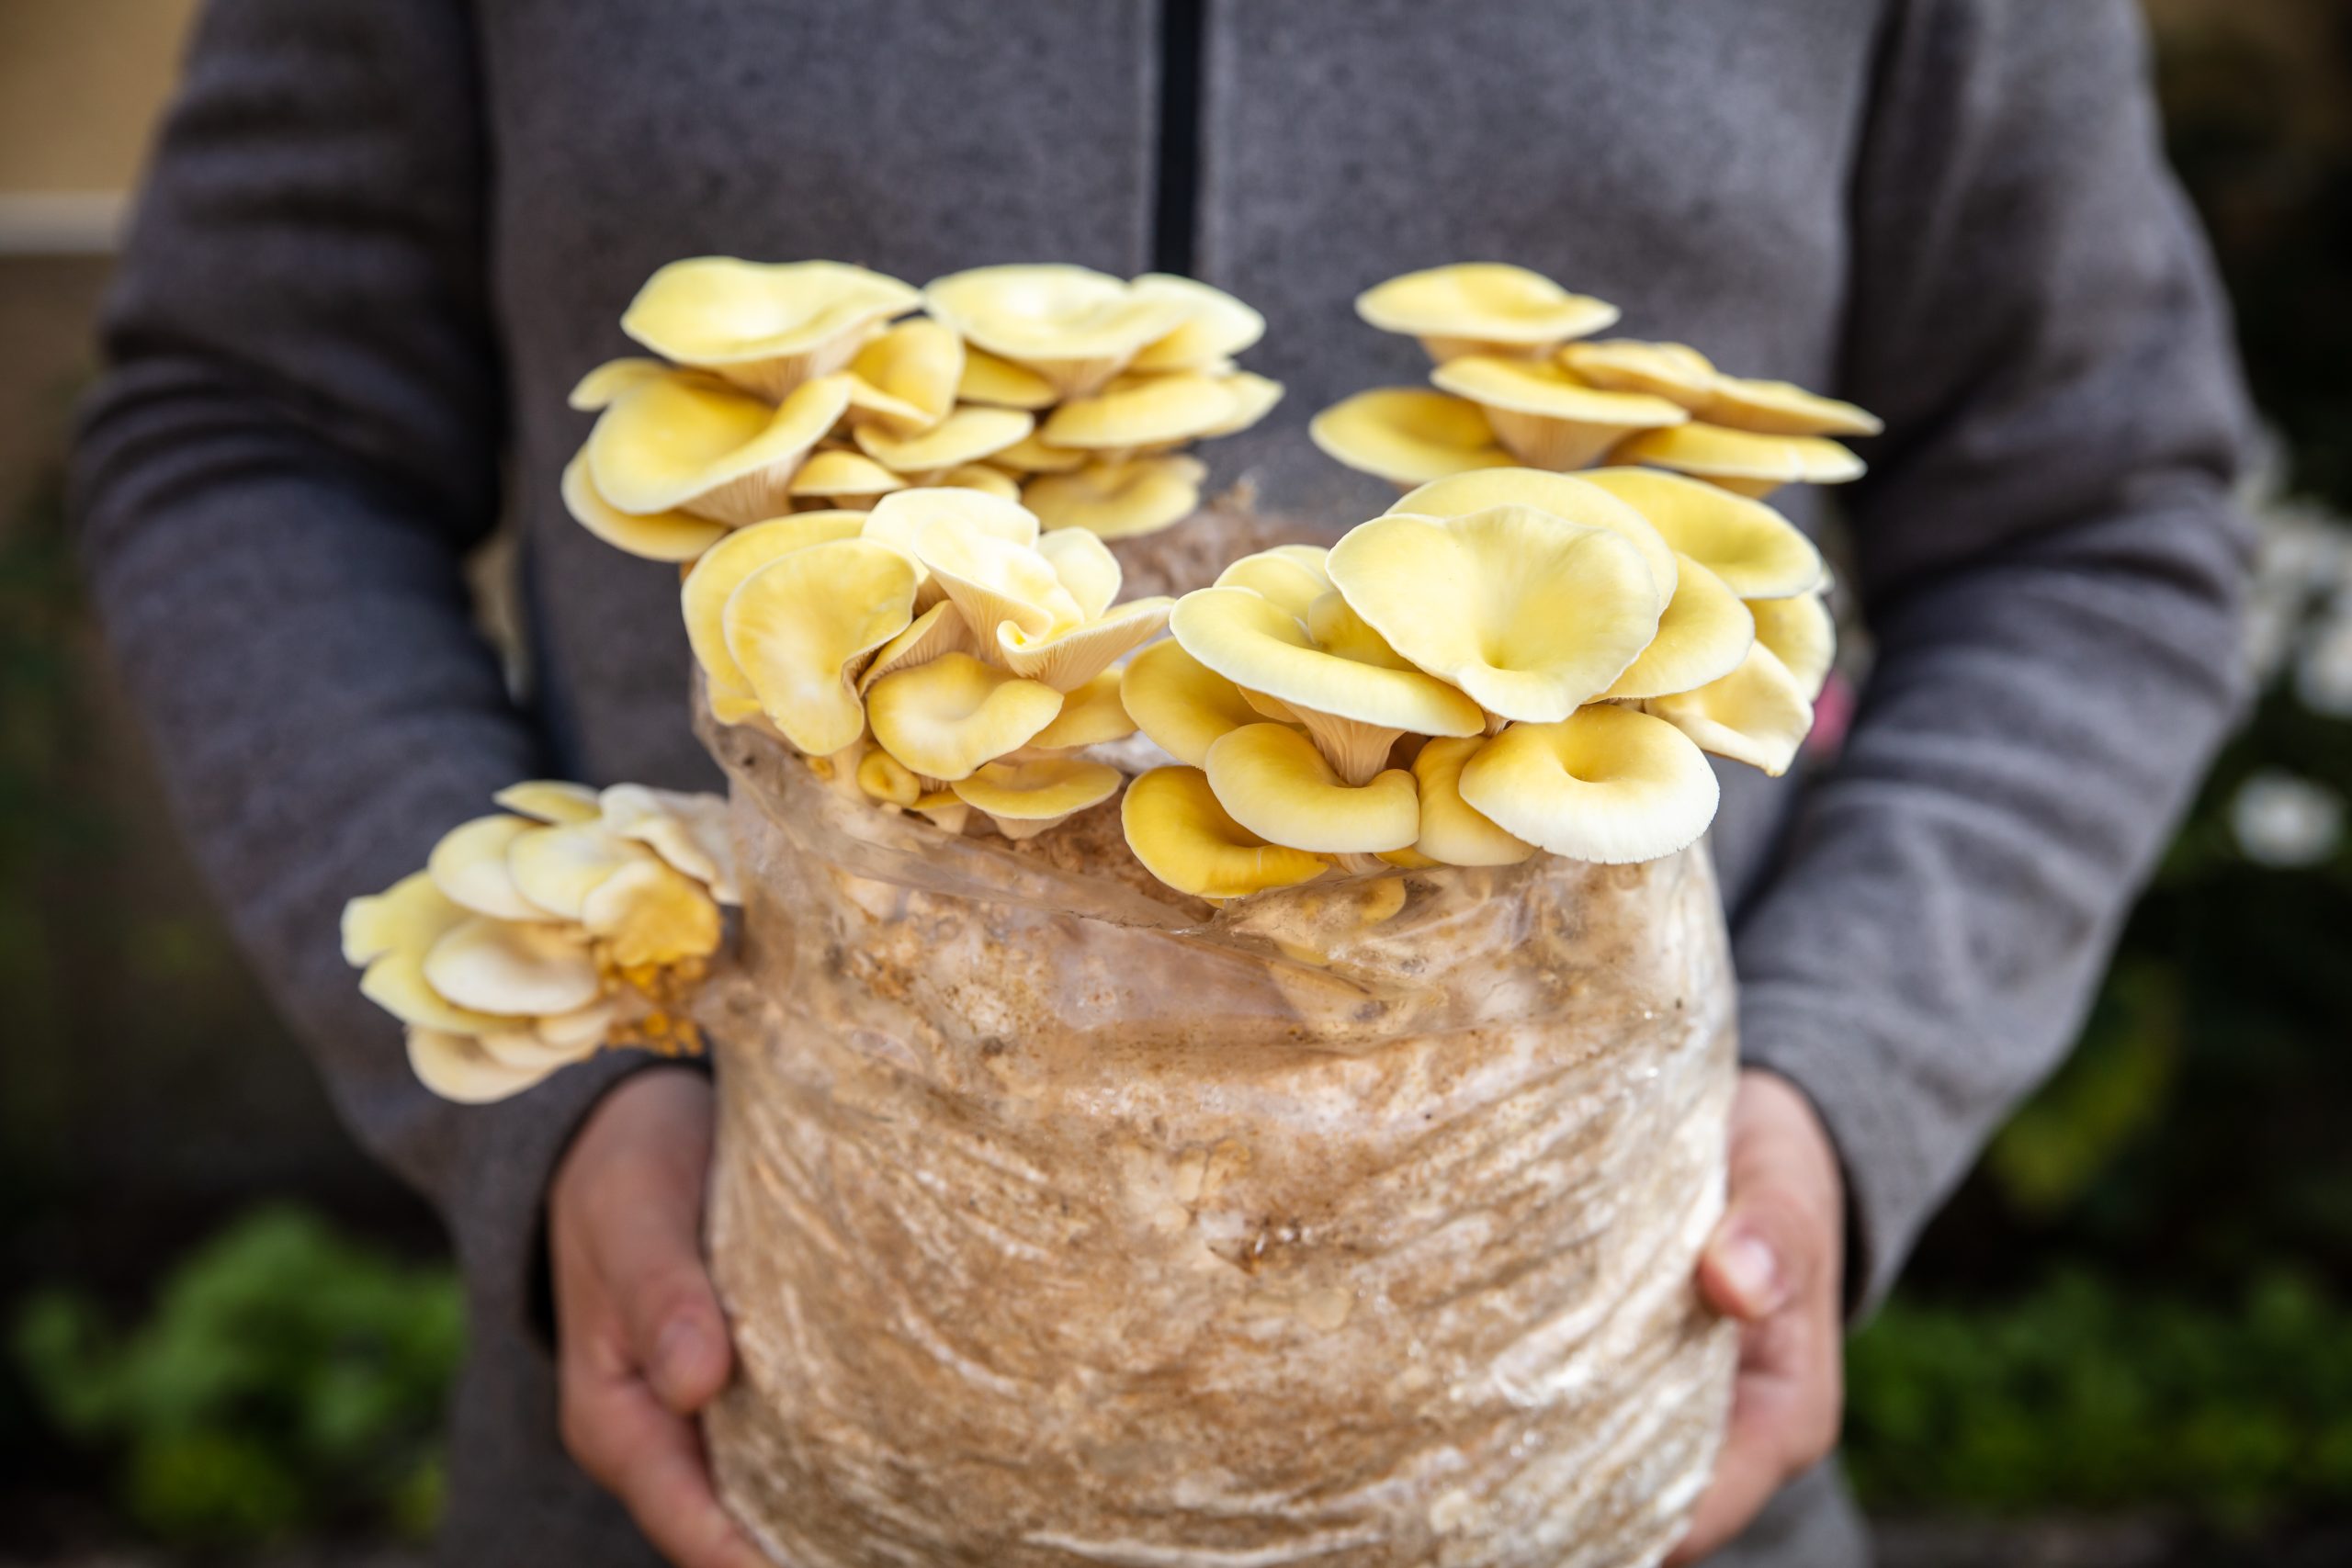 Mushroom grow kits